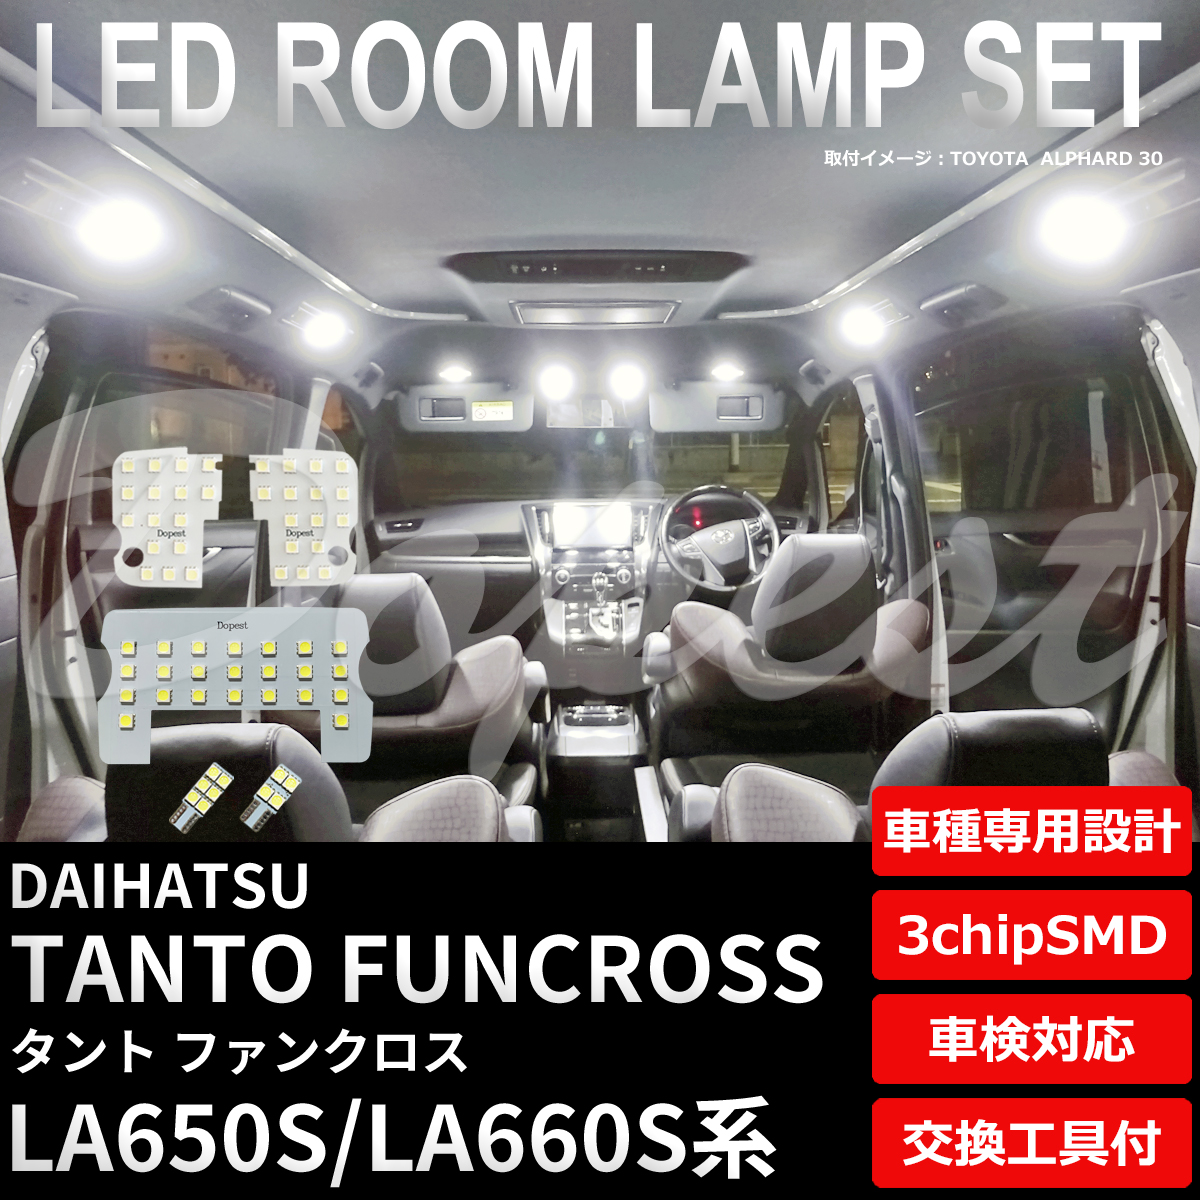 タント ファンクロス LEDルームランプセット LA650S/LA660S系 純白色/電球色